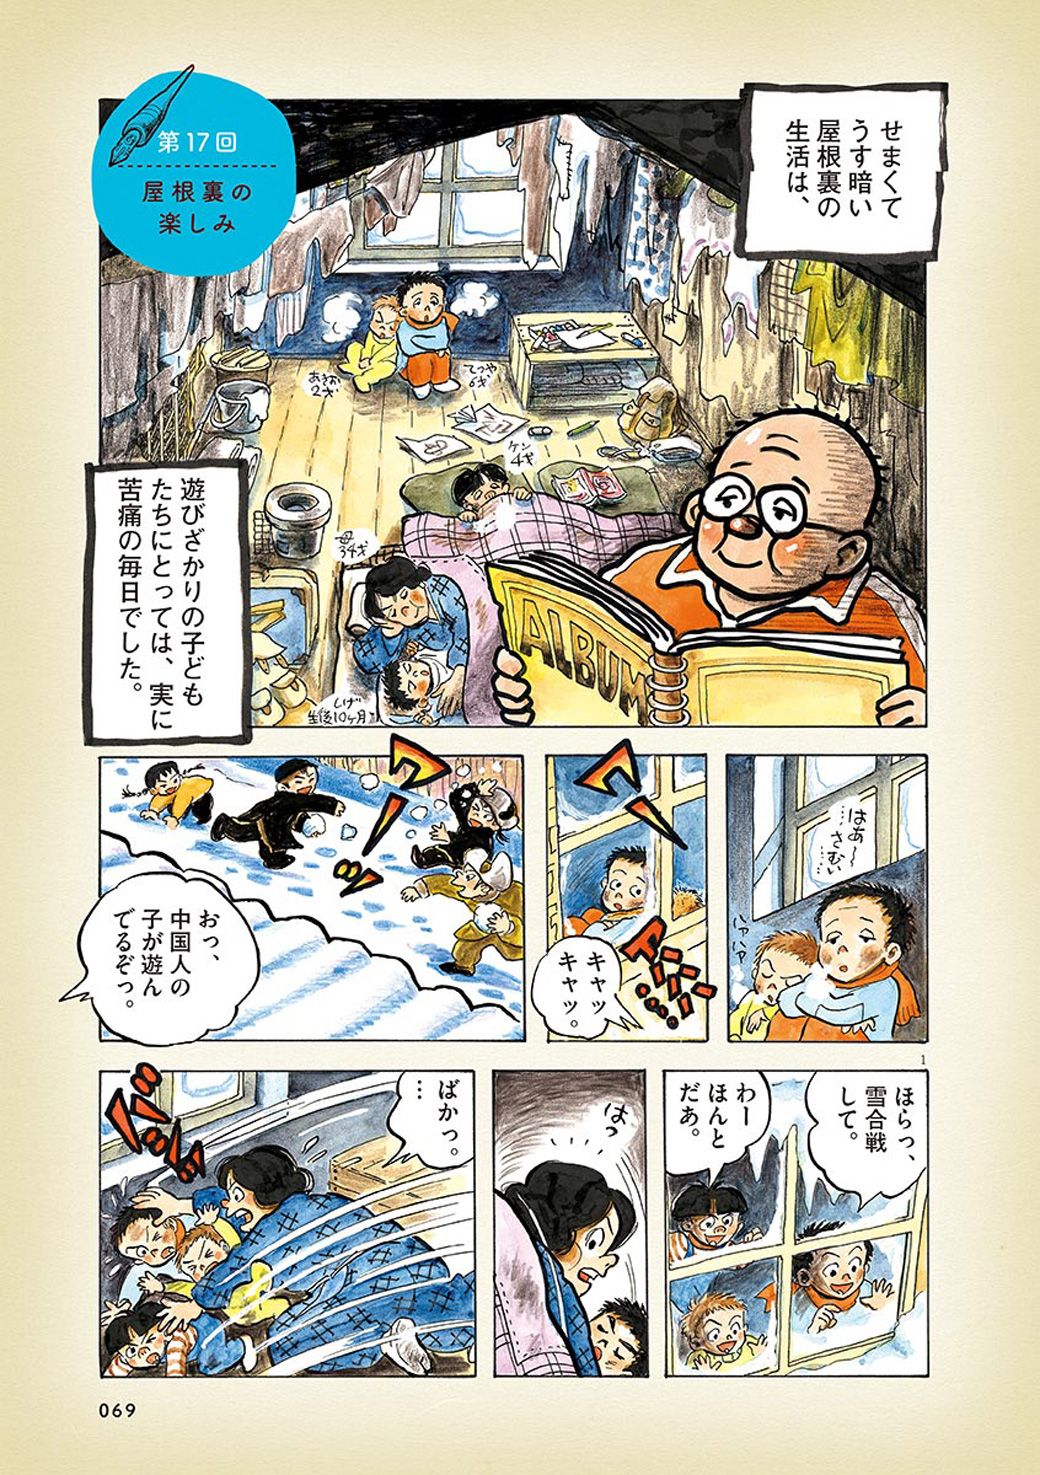 満州の 屋根裏暮らし で日本人が見つけた楽しみ 漫画 ひねもすのたり日記 第17回 東洋経済オンライン Goo ニュース